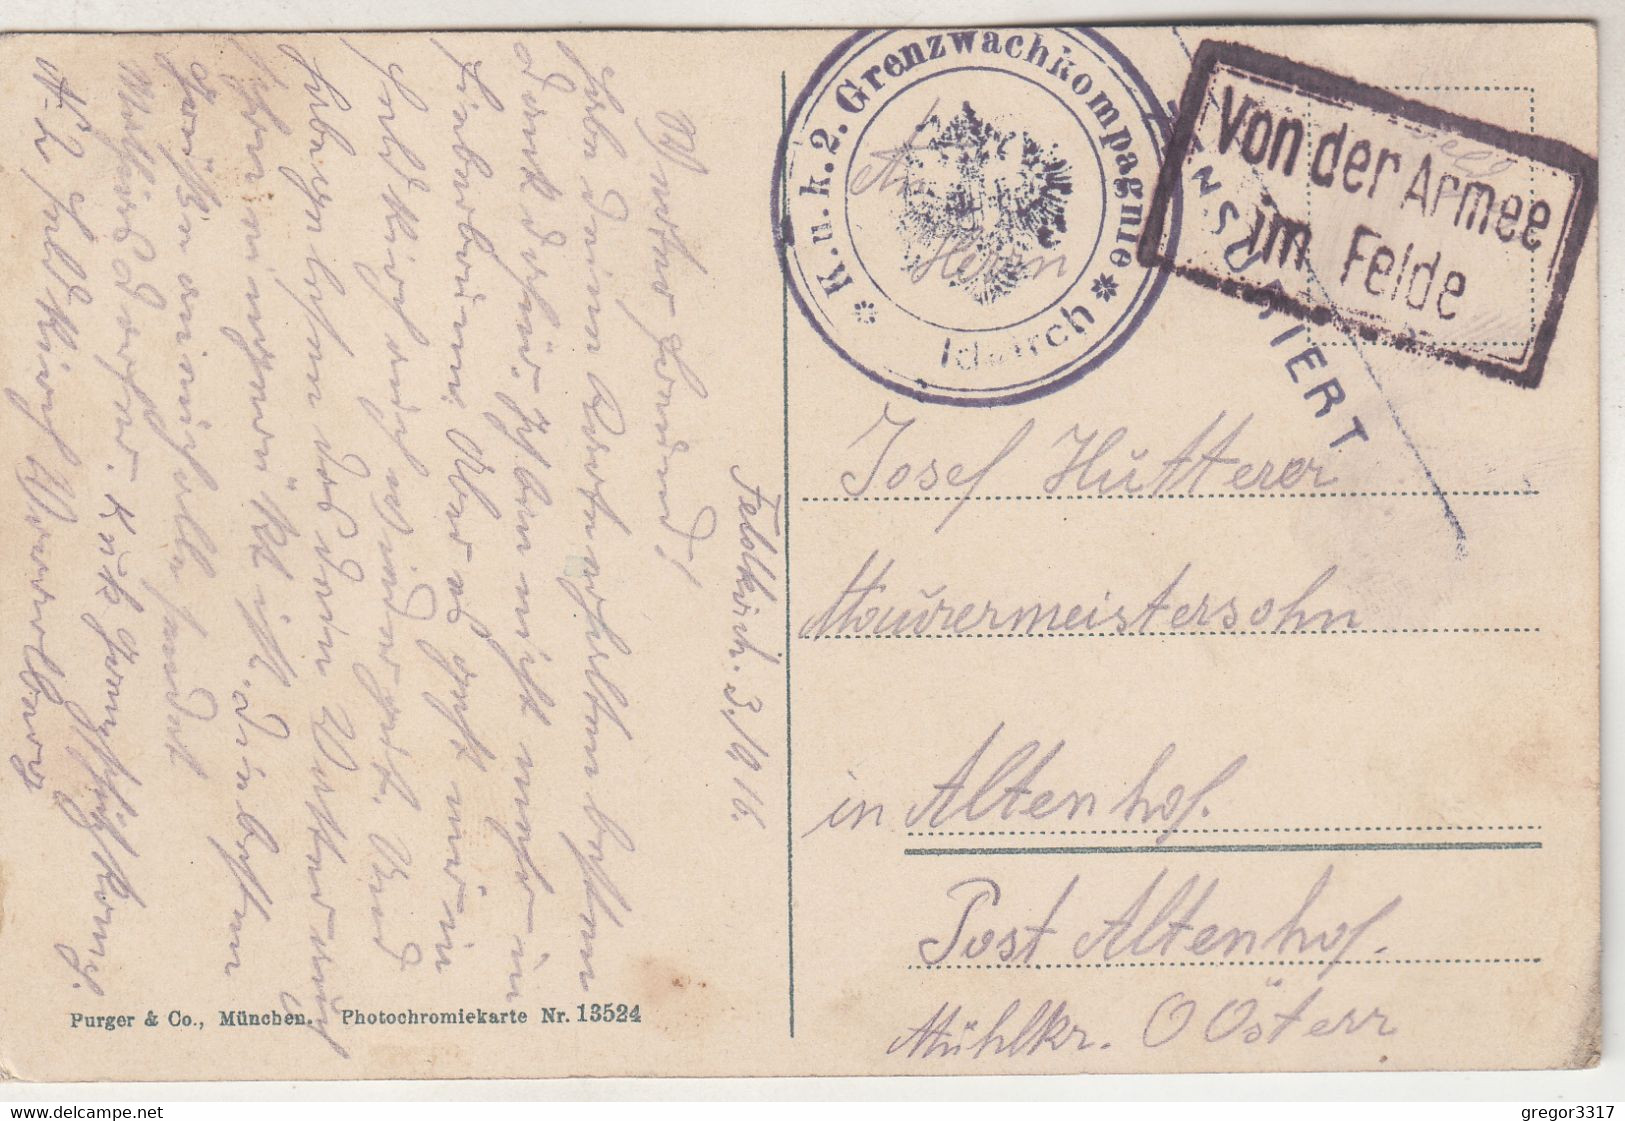 C3380) FELDKIRCH Mit Den Schweizer Bergen - Vorarlberg - Häuser DETAILS Feldpost 1916 - Feldkirch